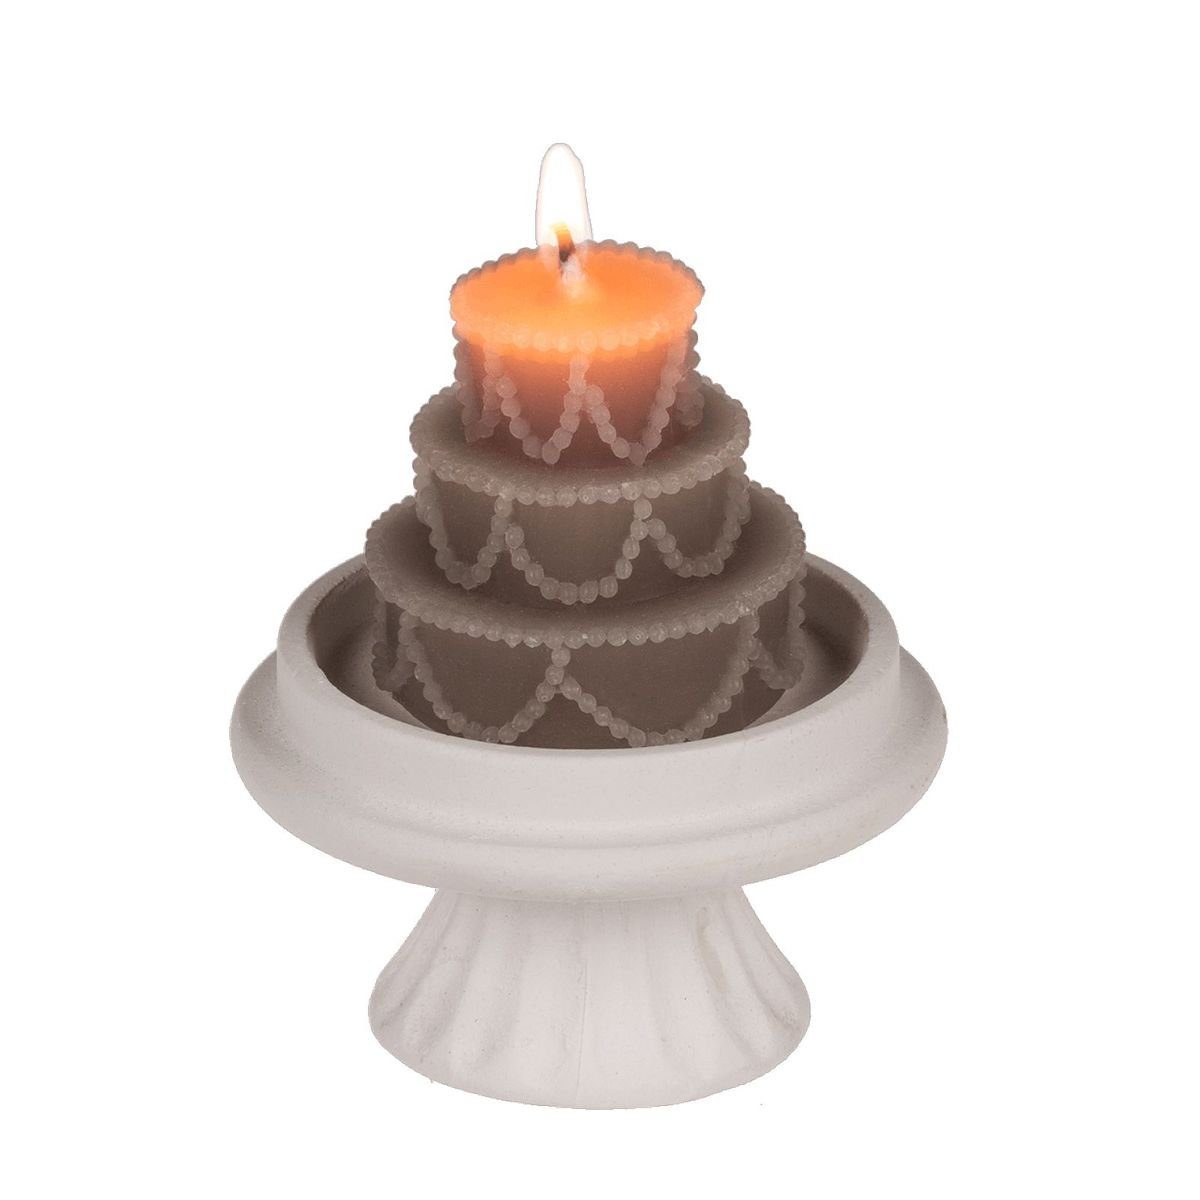 Out of the Blue Stumpenkerze Kerze Hochzeitstorte auf Ständer in Creme oder Khaki 2h Brenndauer, Mini Kuchen-Kerze